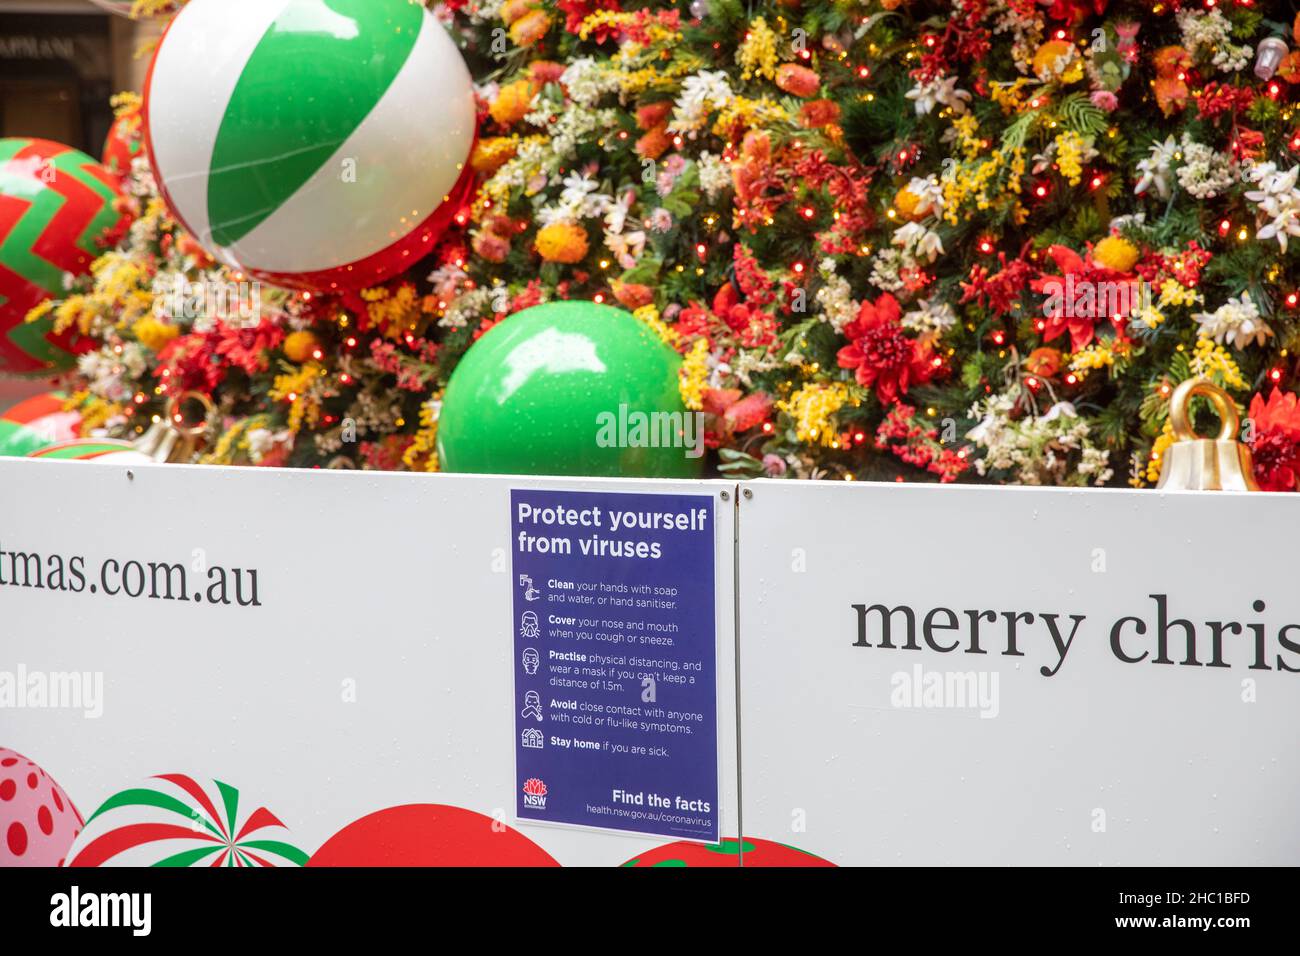 Consigli sulla salute a Sydney accanto all'albero di Natale pubblico a Martin Place, proteggetevi dai virus come i casi omicron sollecitano, Sydney, Australia Foto Stock